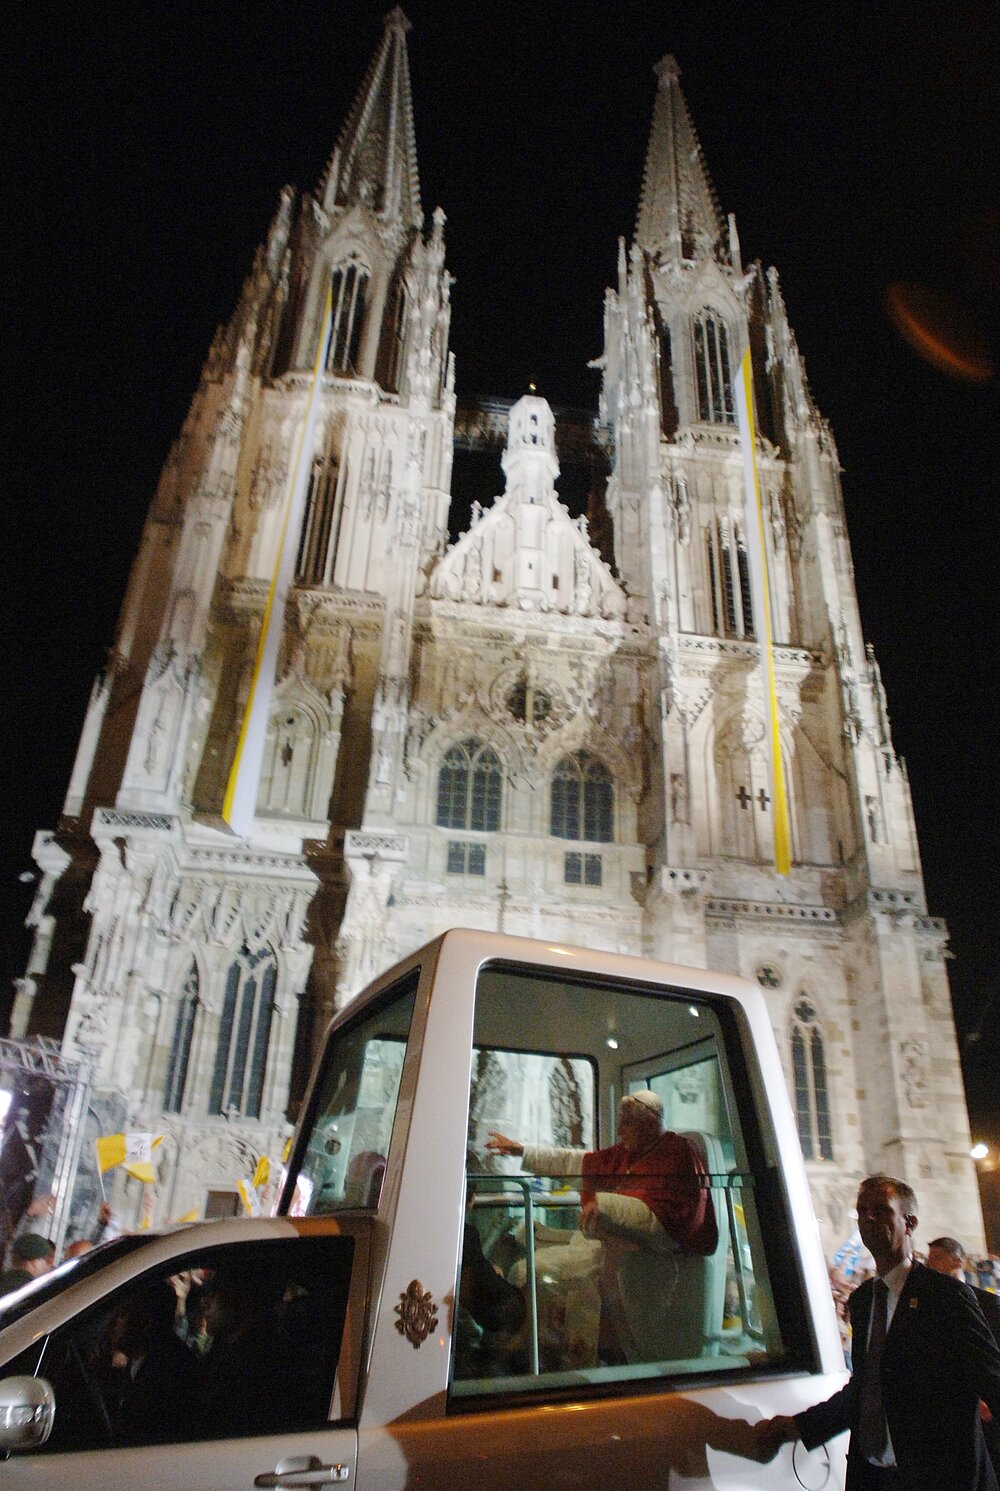 Papst Benedikt XVI sitzt im Papamobil und winkt. Im Hintergrund ist der Regensburger Dom zu sehen.